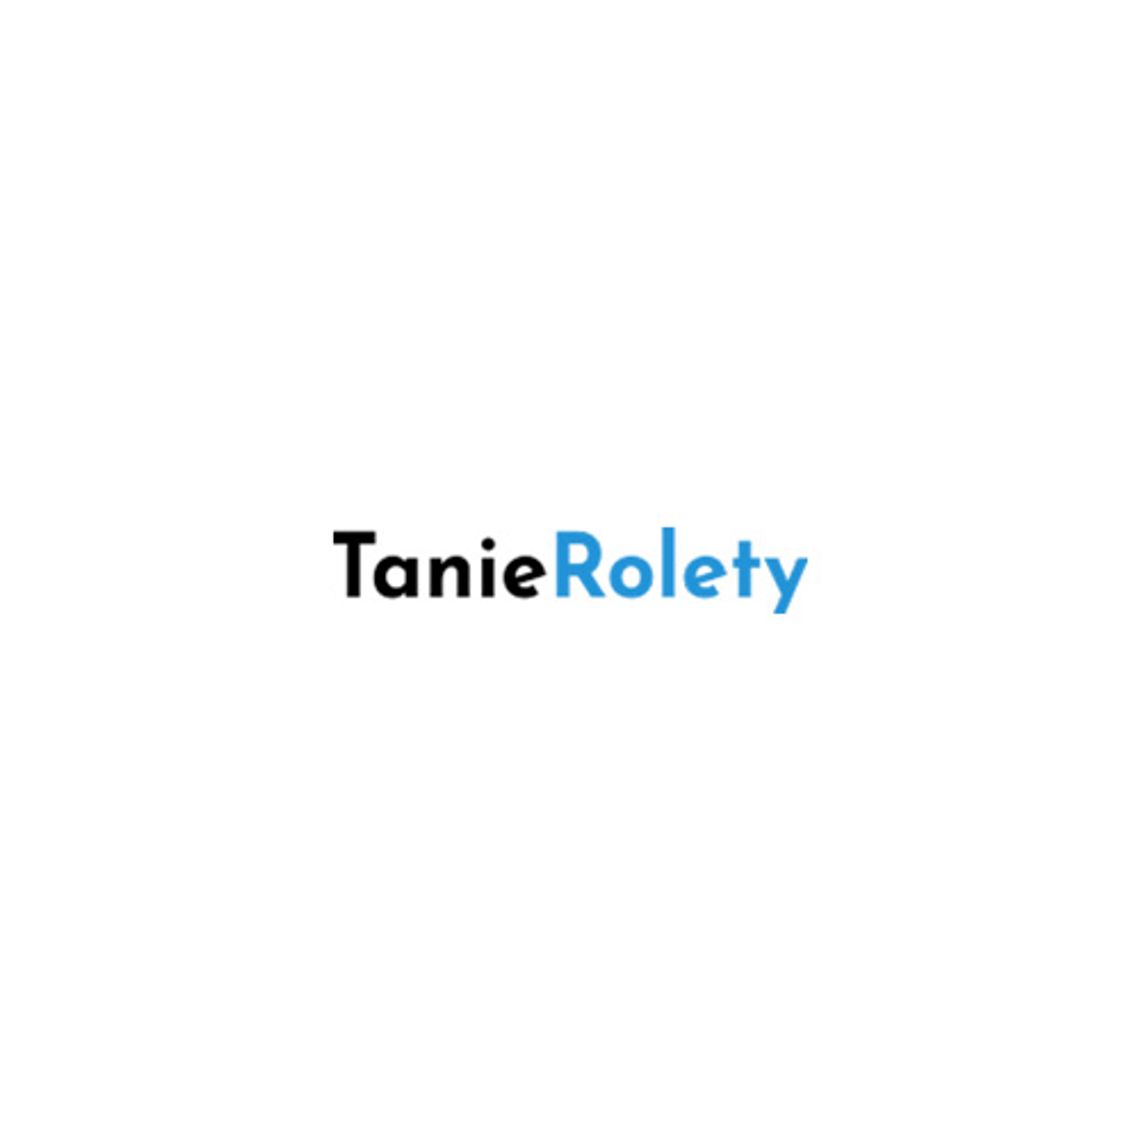 Tanie Rolety